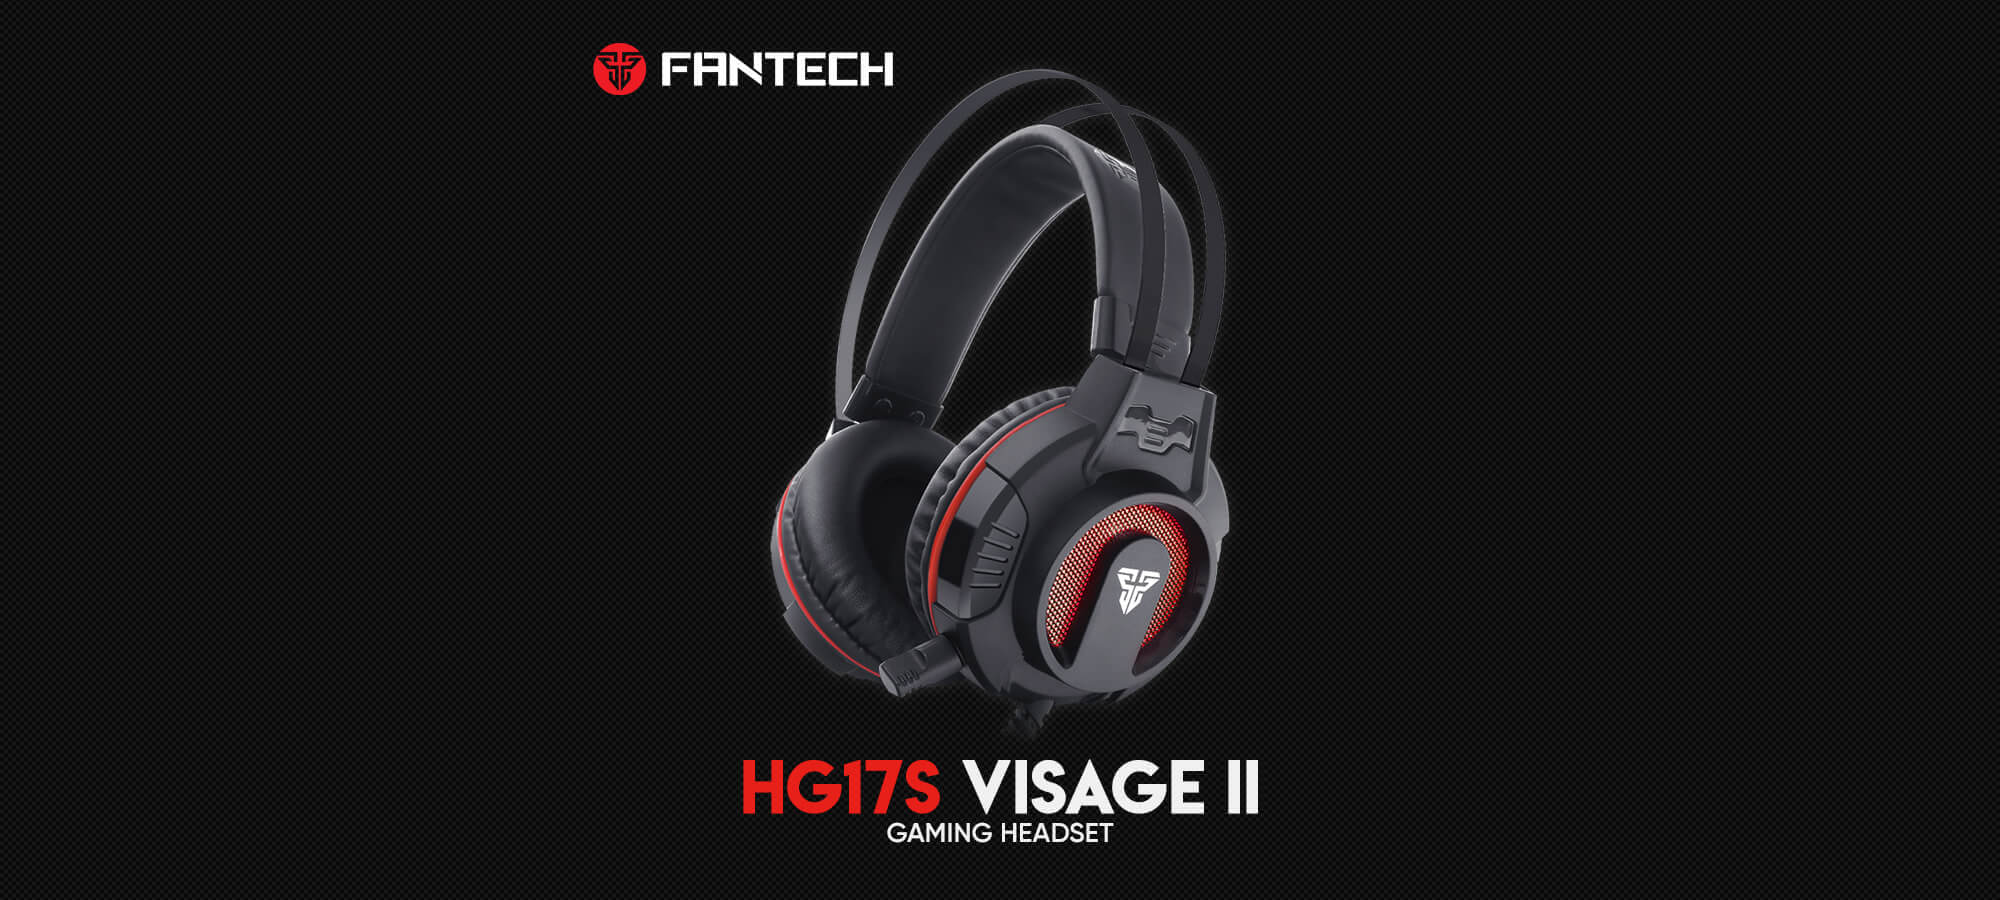 Игровая гарнитура Fantech Visage II HG17s